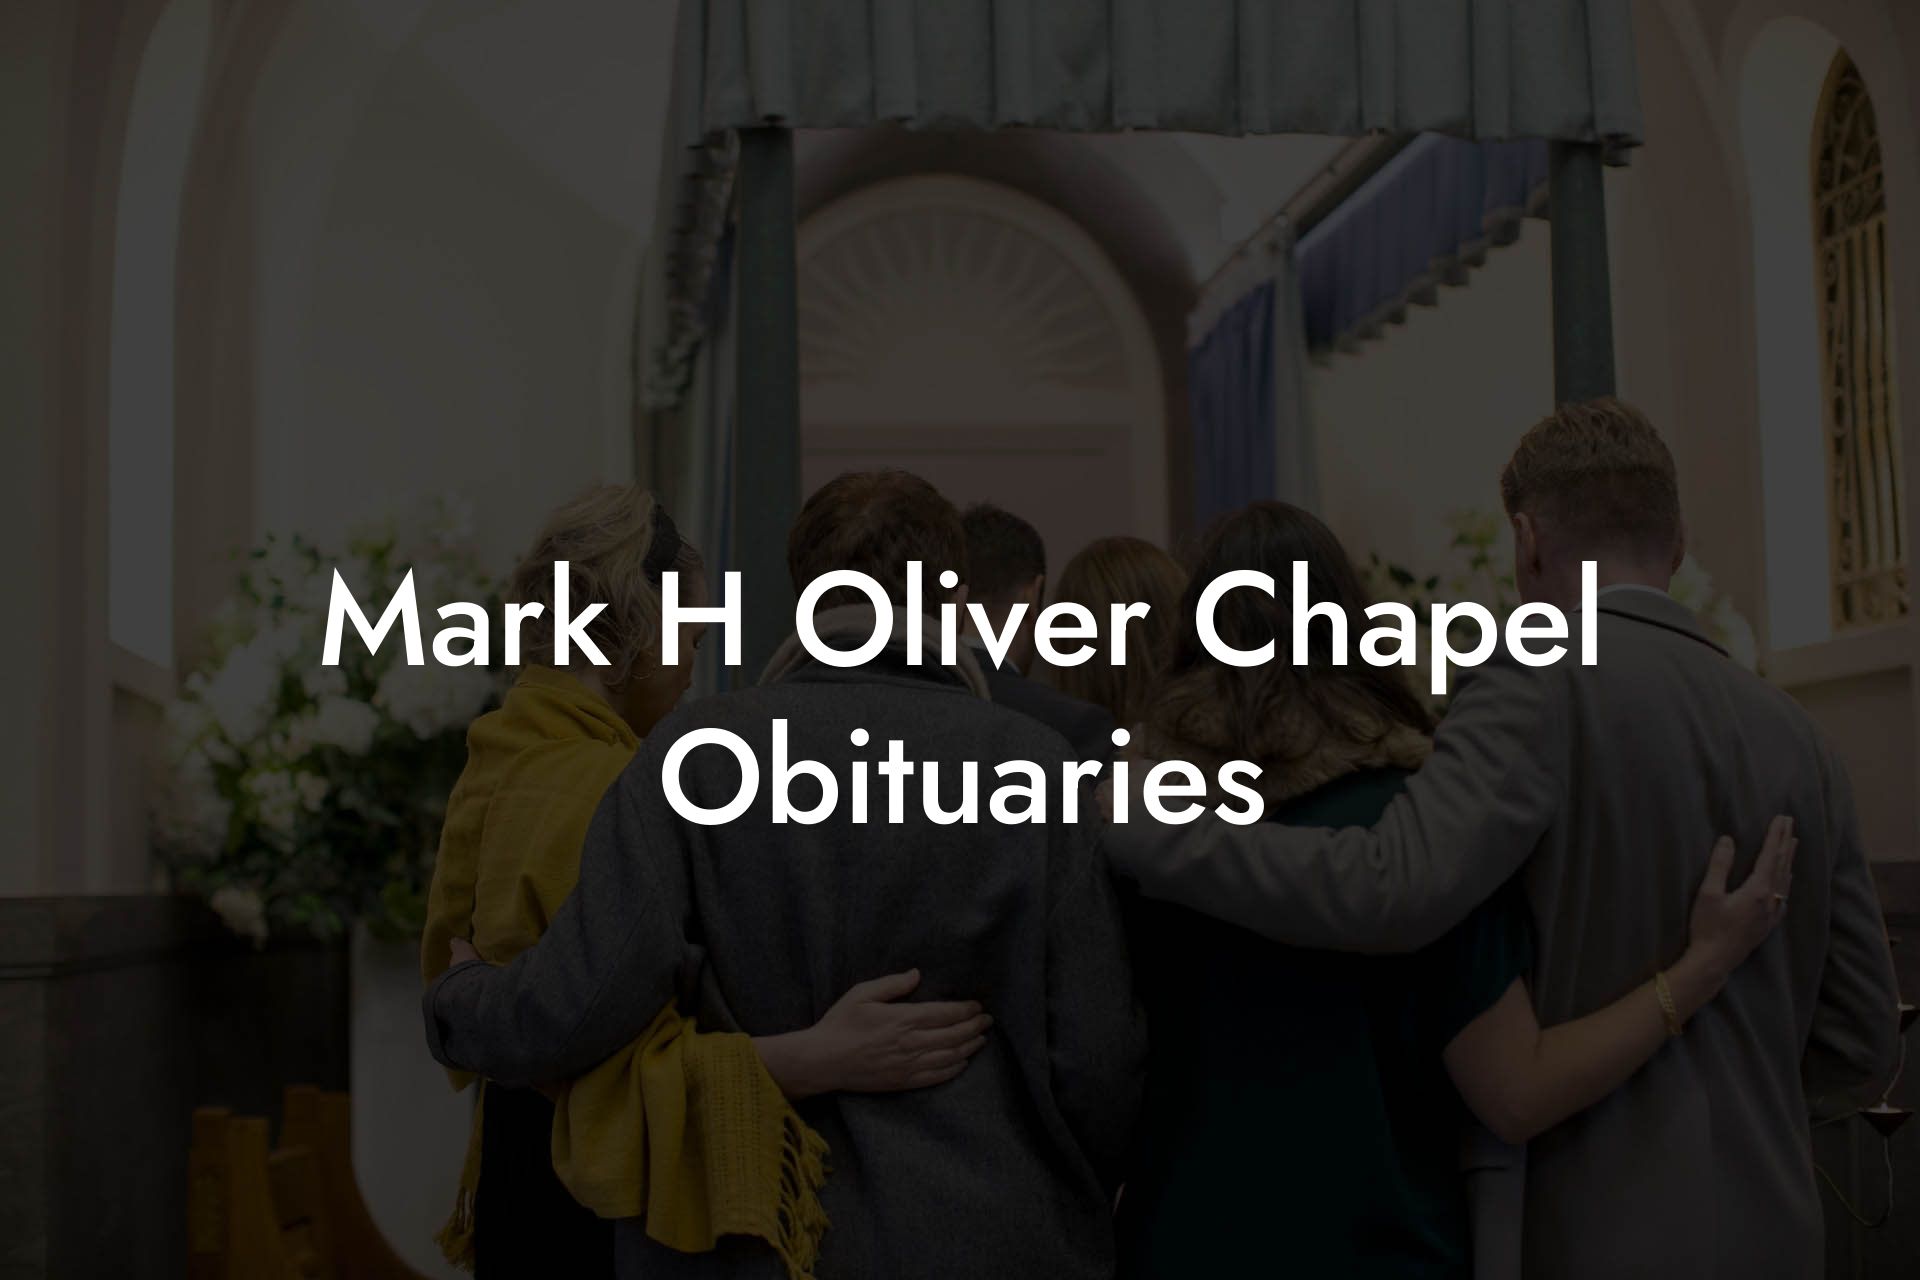 Mark H Oliver Chapel Obituaries